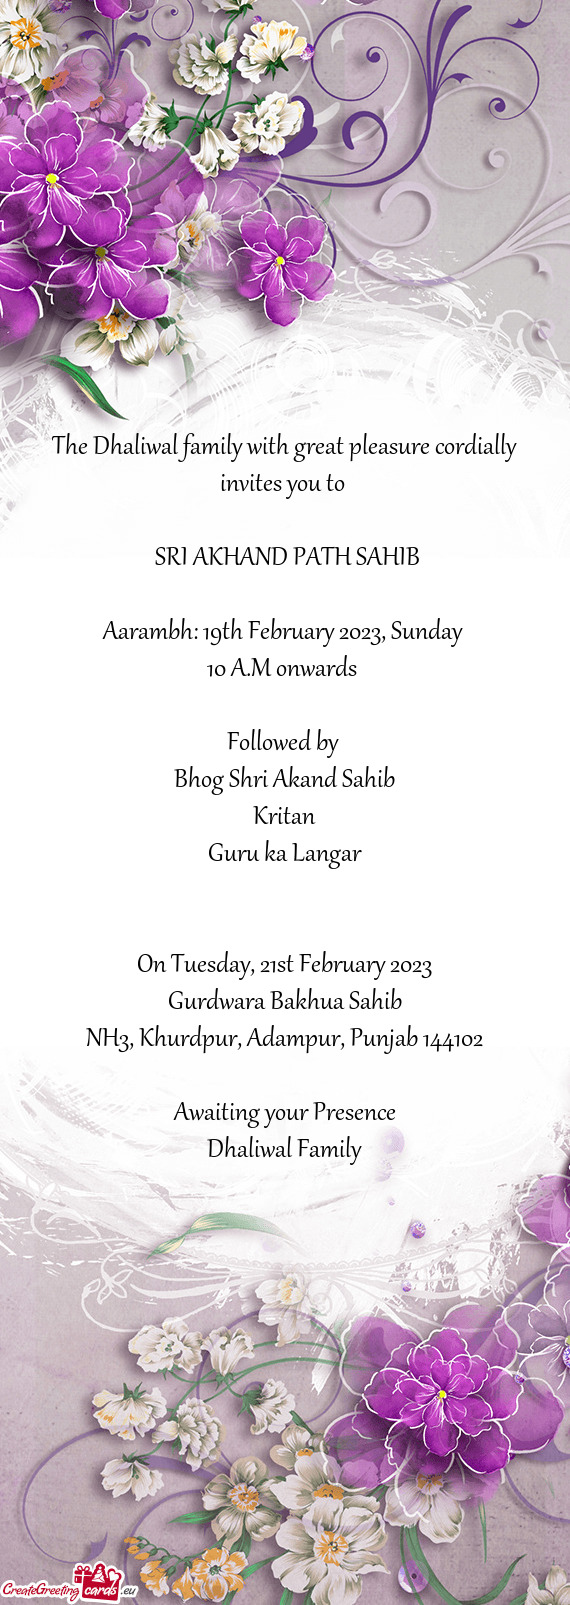 Aarambh: 19th February 2023, Sunday